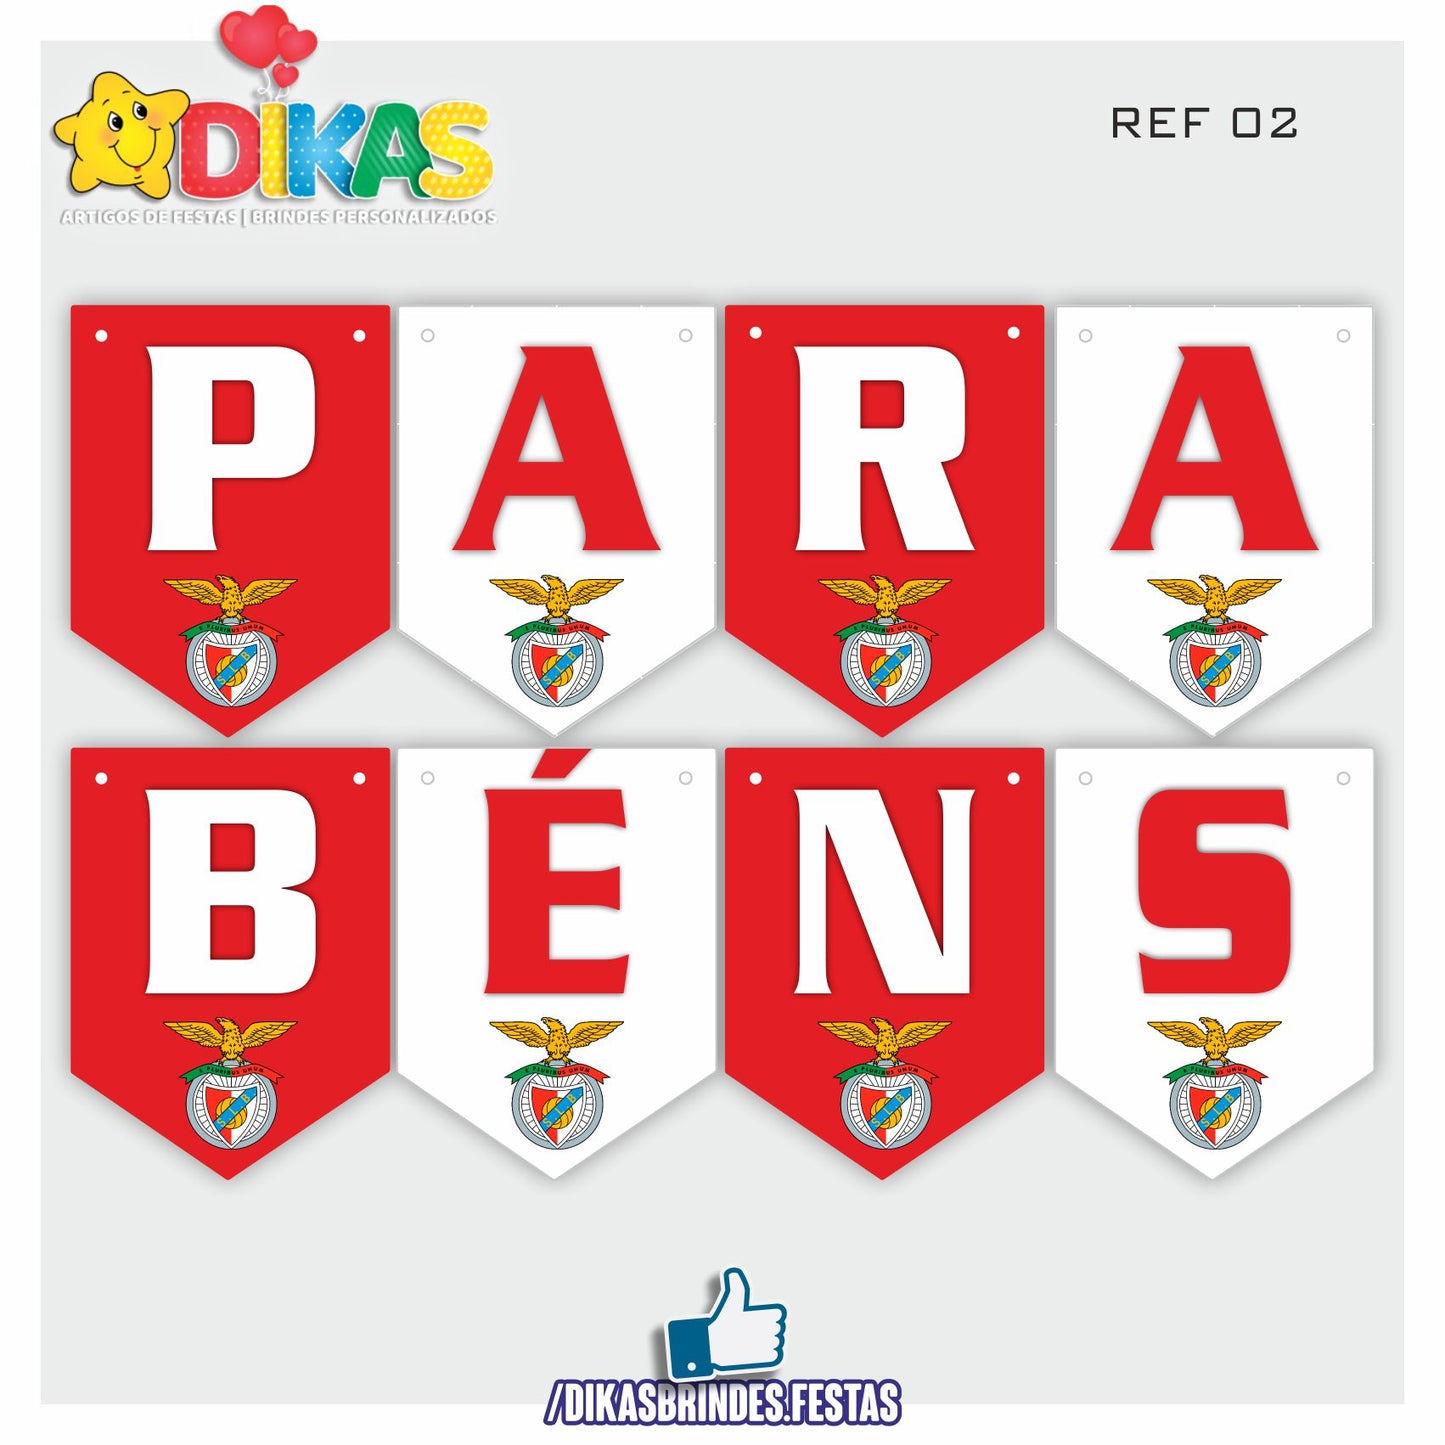 BANDEIROLA "PARABÉNS" - FUTEBOL BENFICA